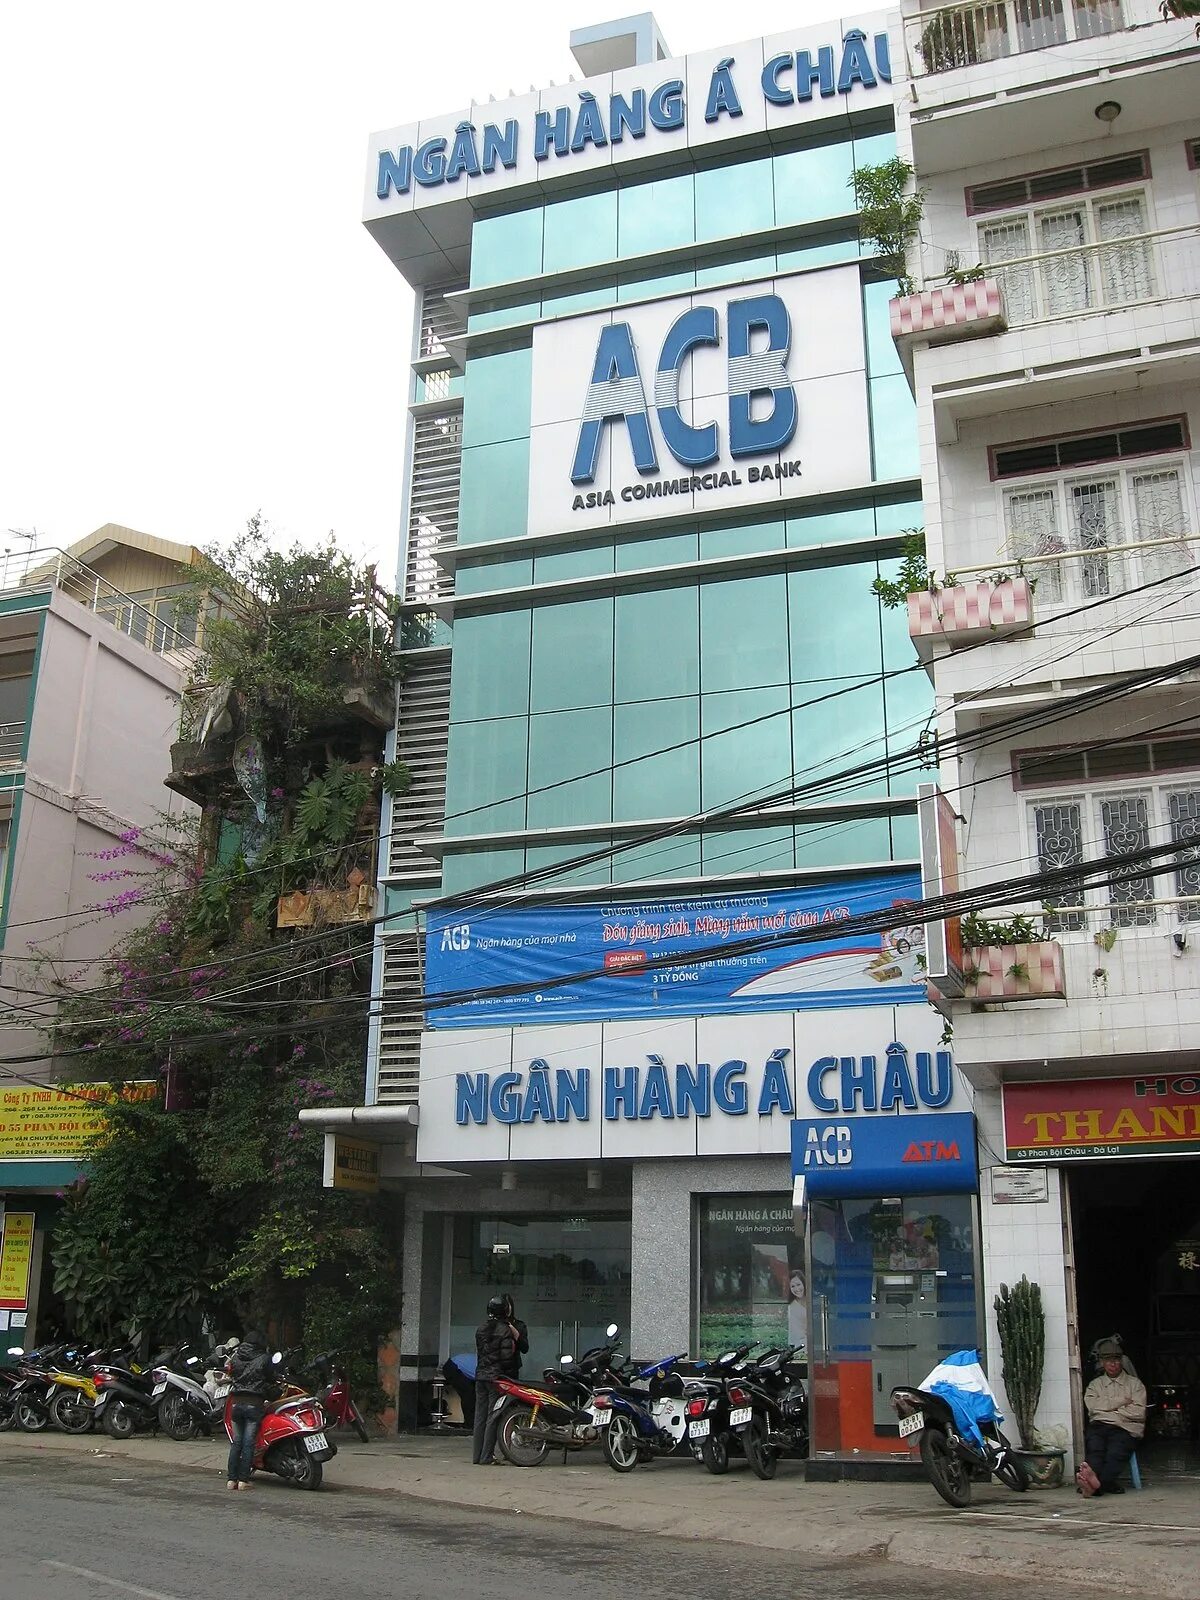 Vietnam bank. Банк Азии. Asia commercial Bank. Банка Вьетнам. Фиолетовый банк во Вьетнаме.